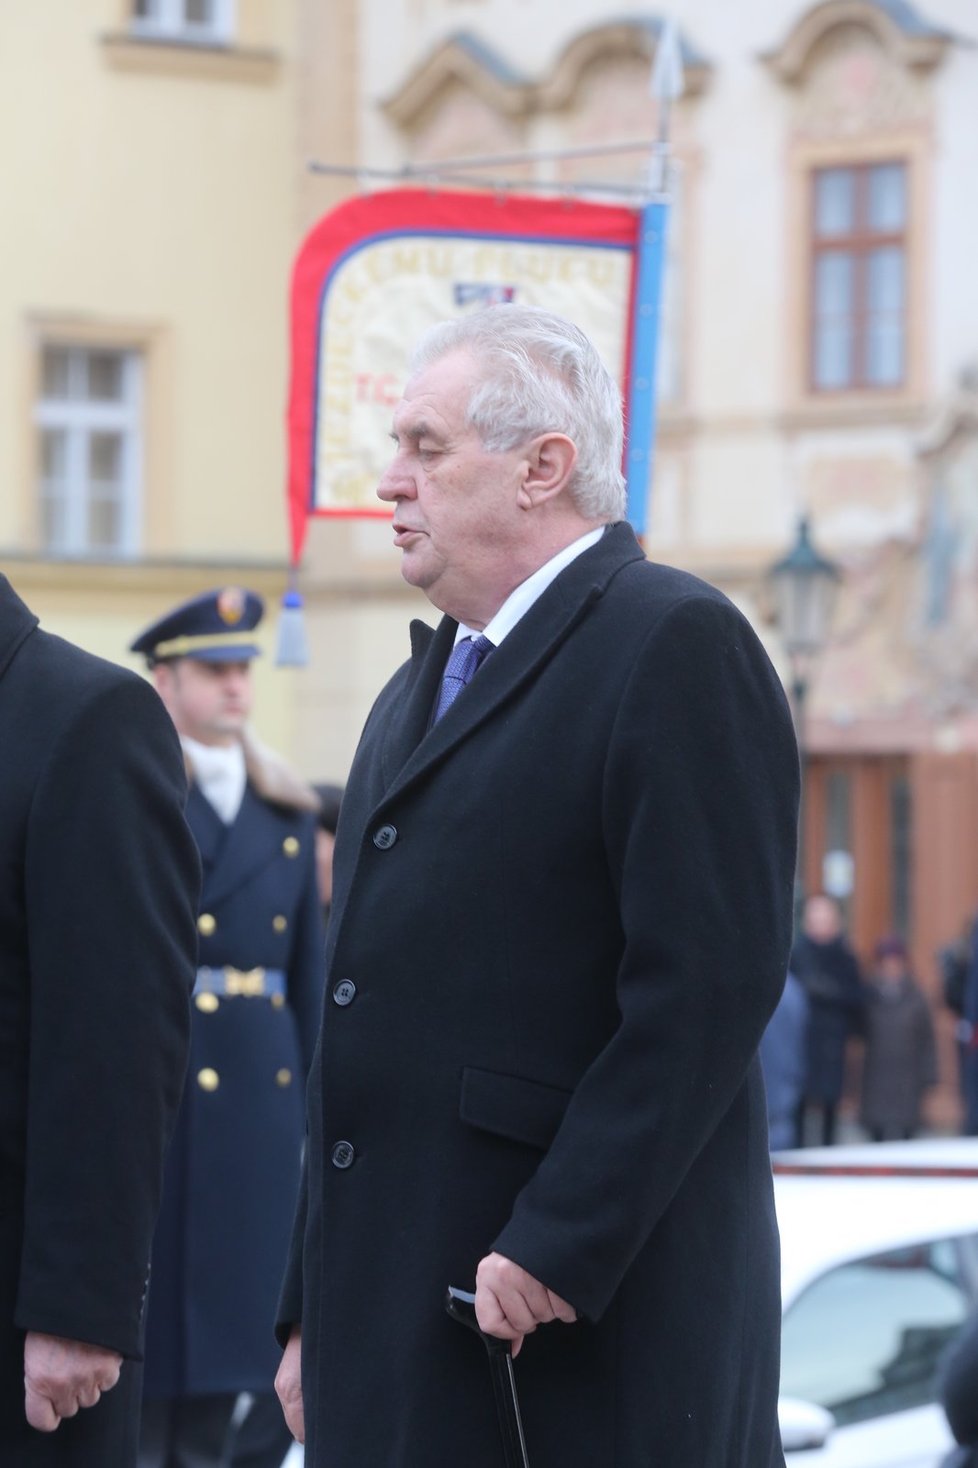 Zeman a Klaus položili věnce u pomníku bývalého prezidenta Beneše.